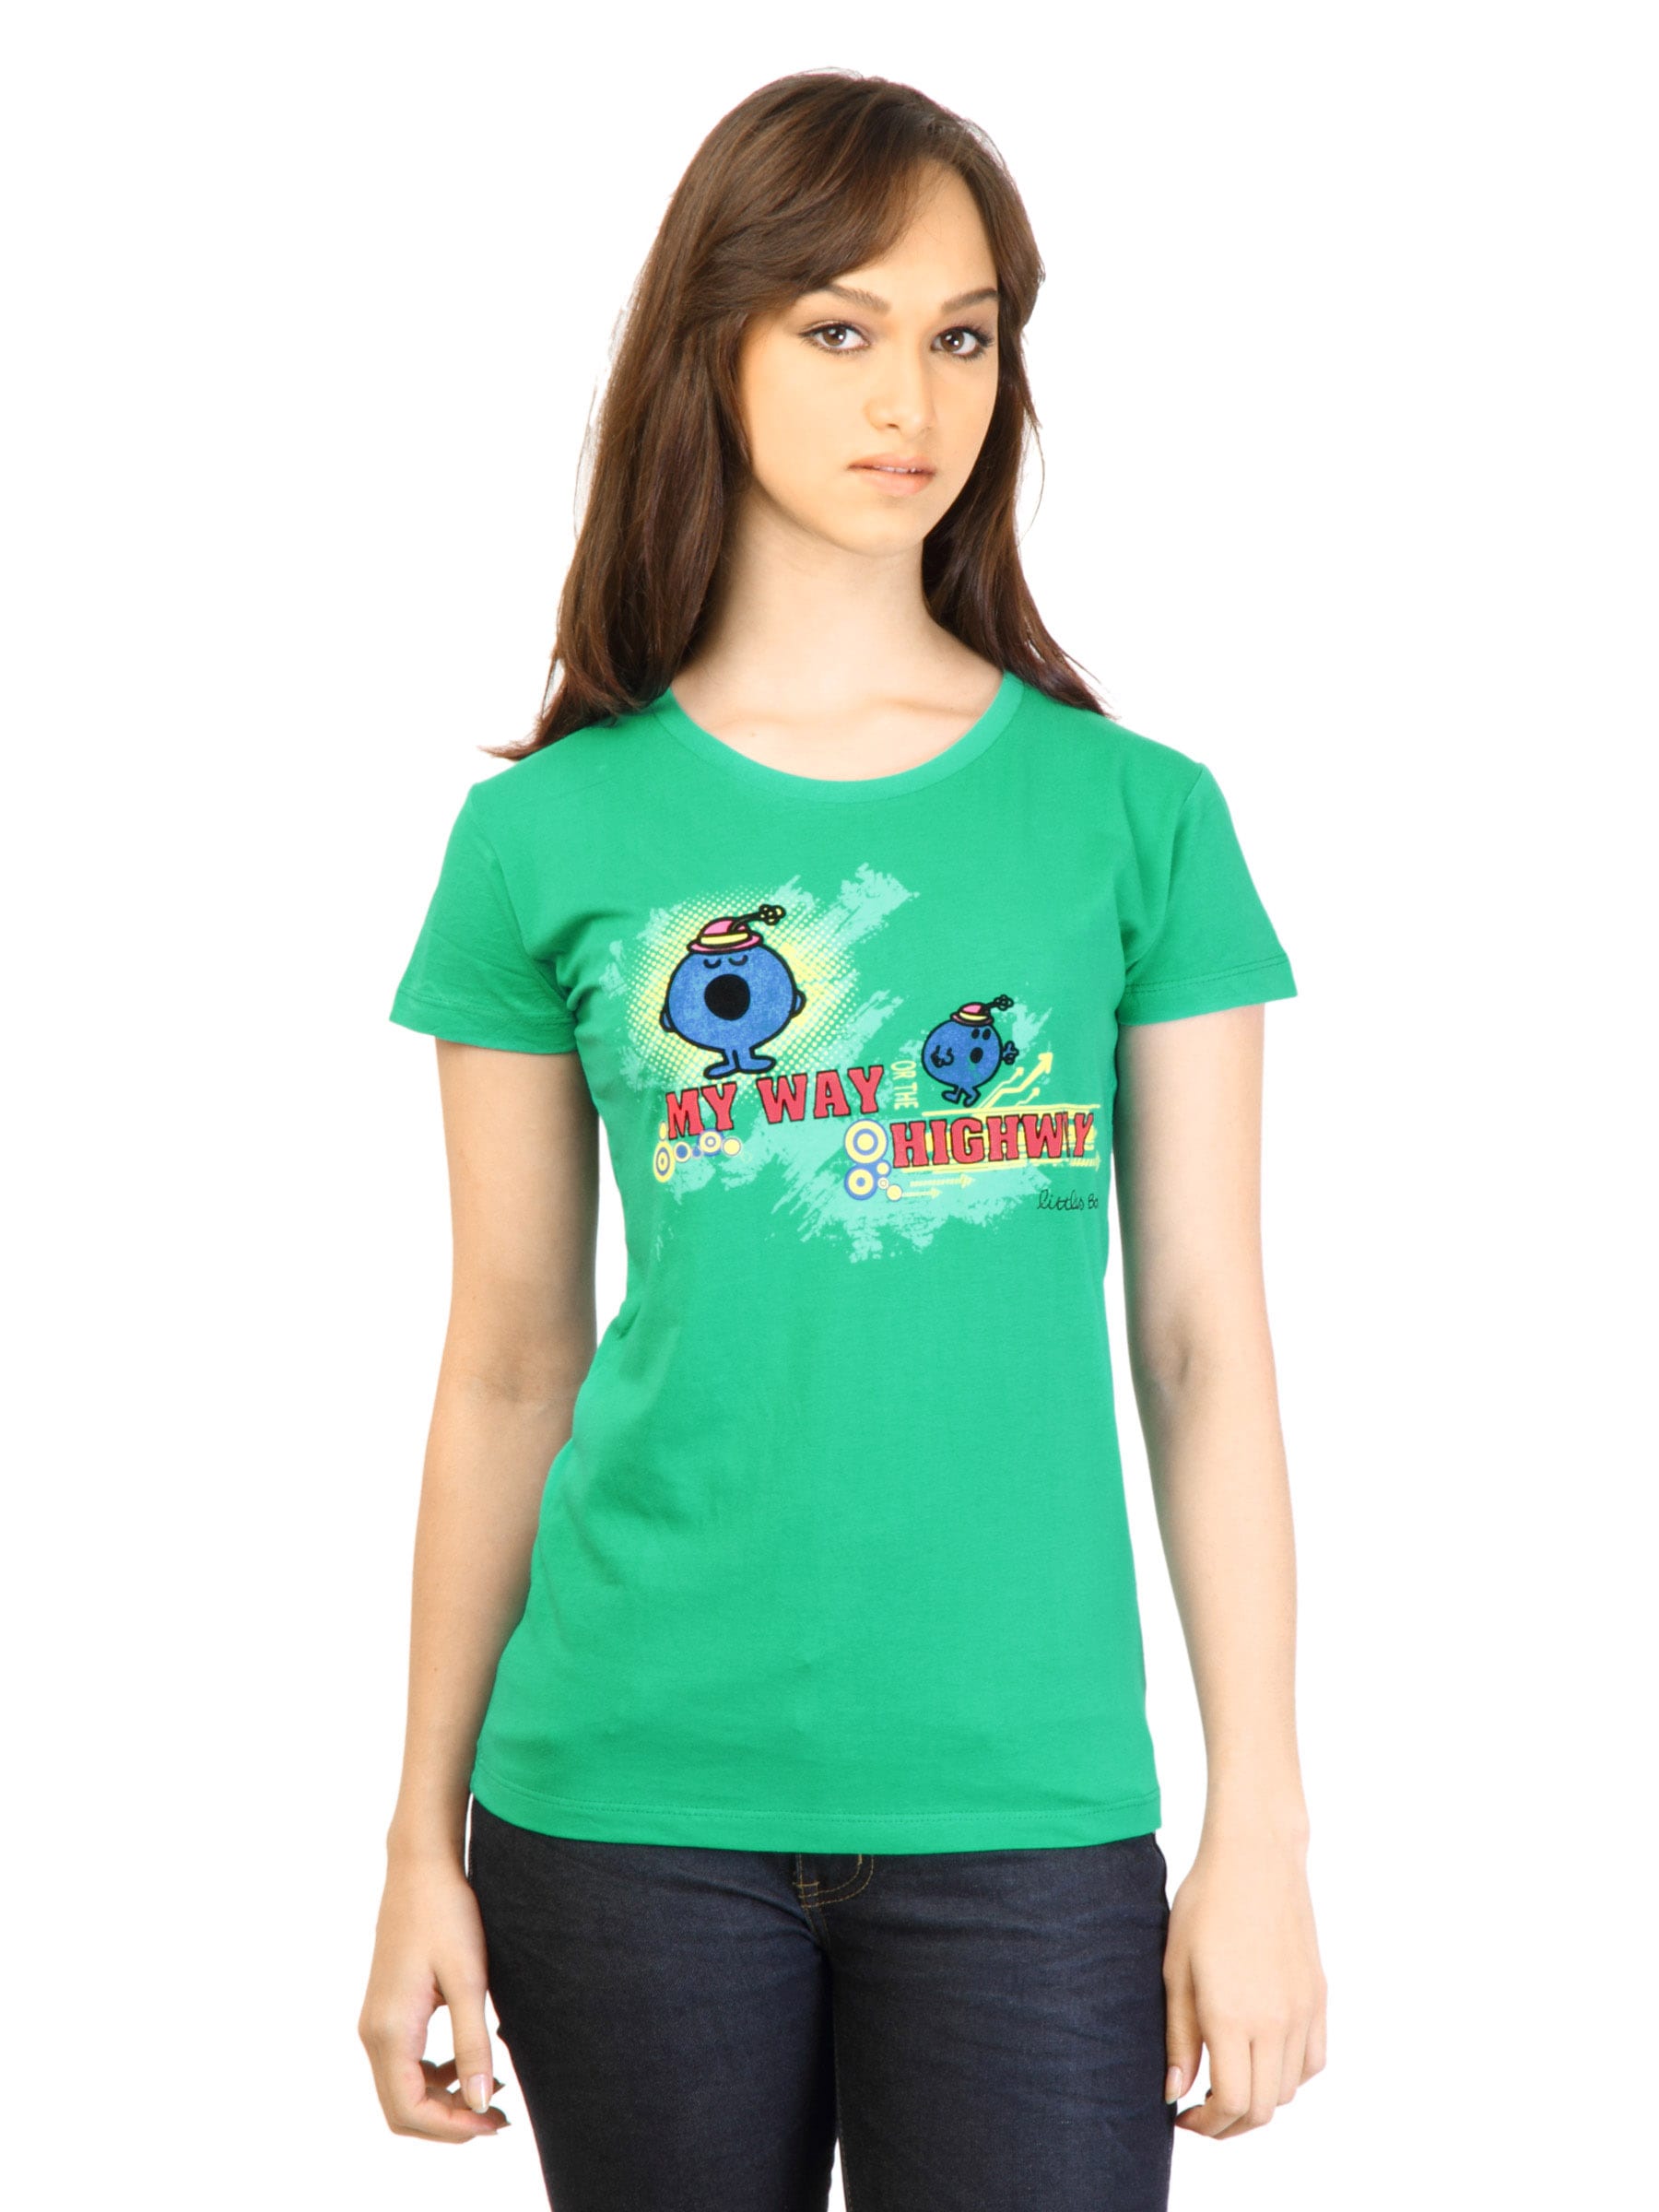 Little Miss Women Printed Green T-shirt